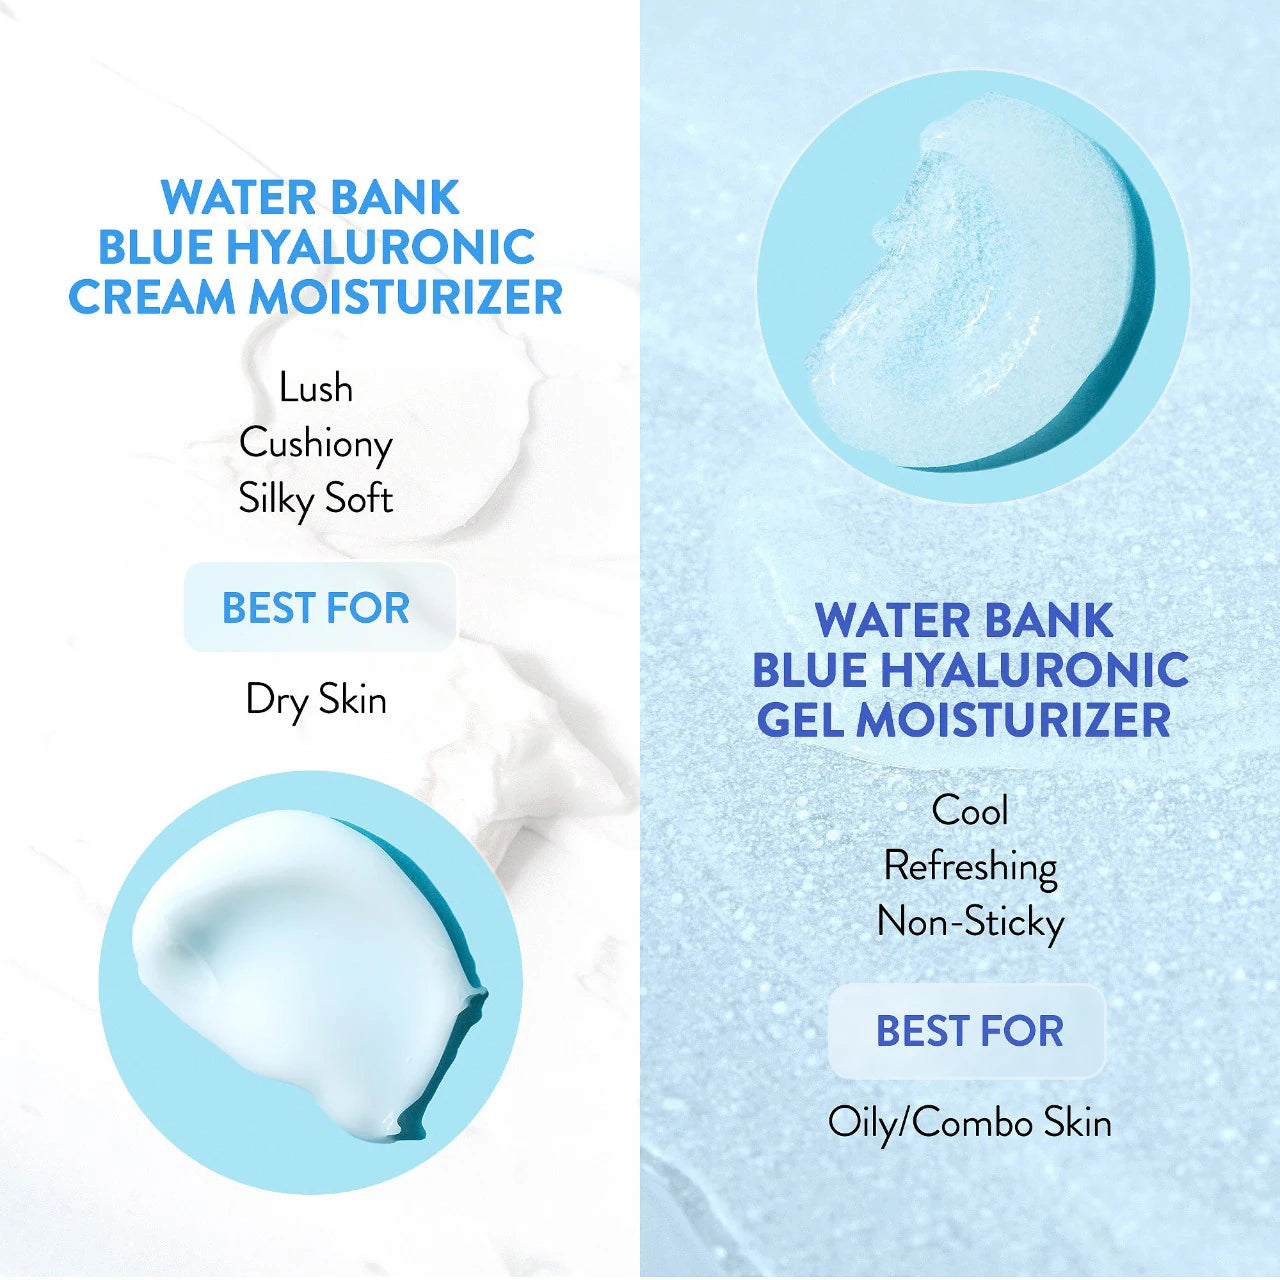 Water Bank Blue Hyaluronic Gel Moisturizer